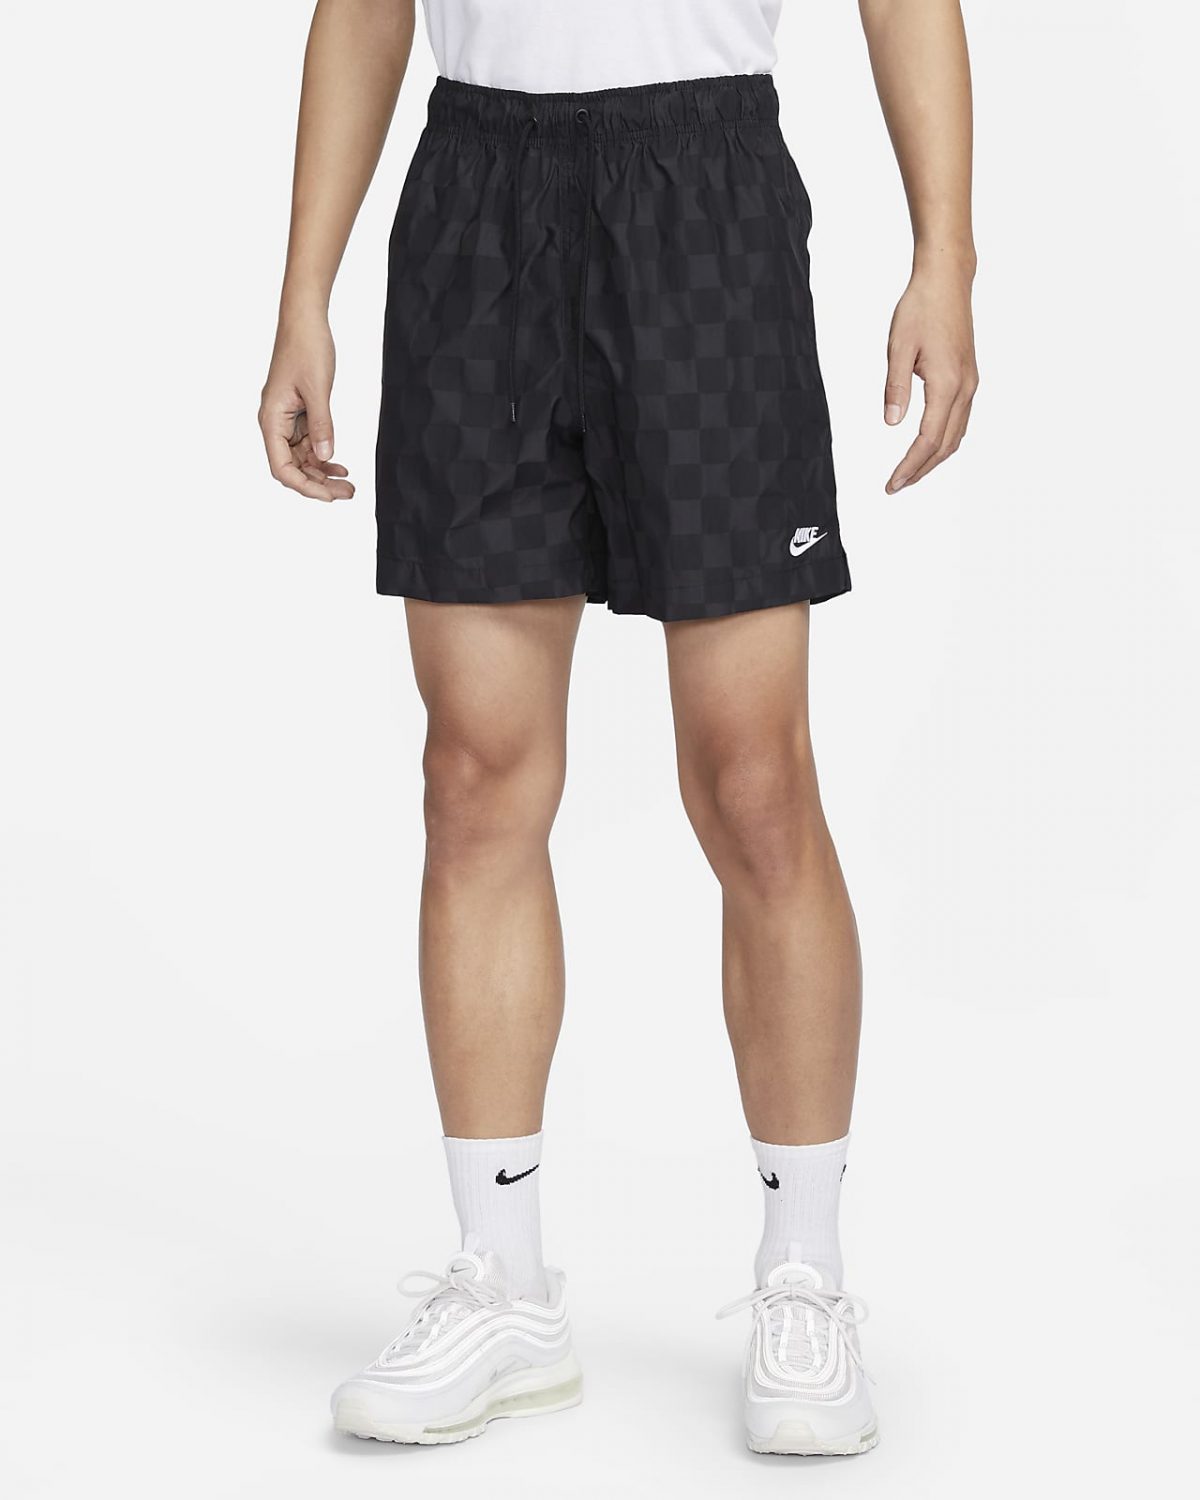 Мужские шорты Nike Club черные фото